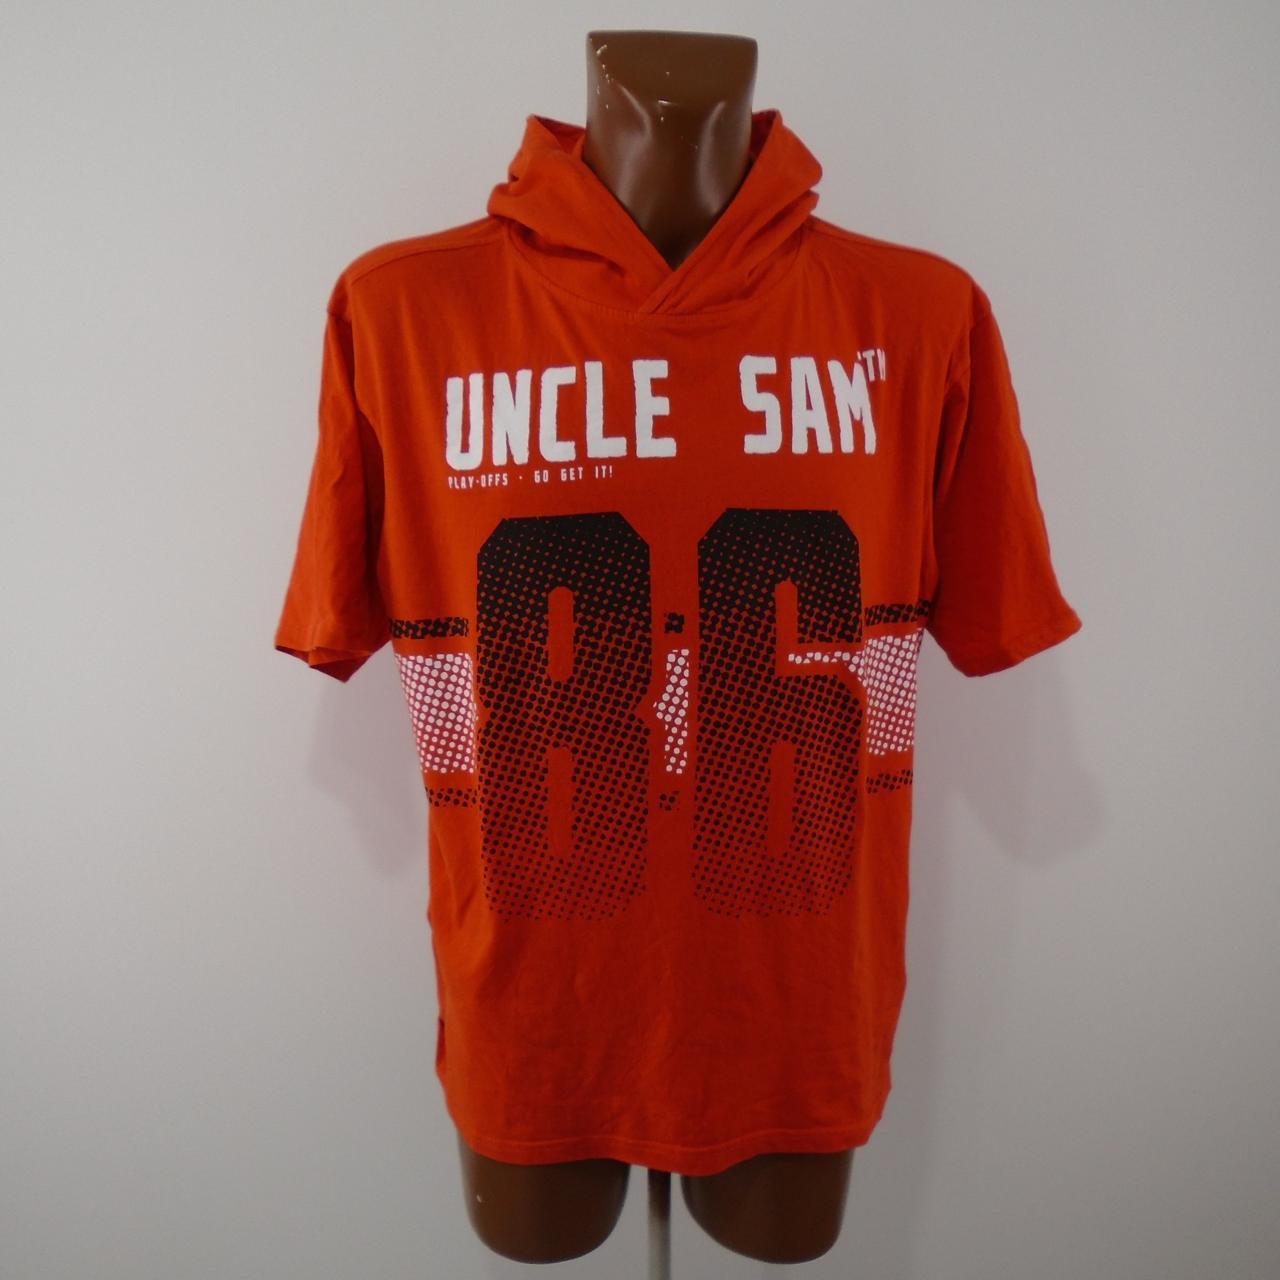 T-shirt homme Oncle Sam.  Orange.  XXL.  Utilisé.  Bien